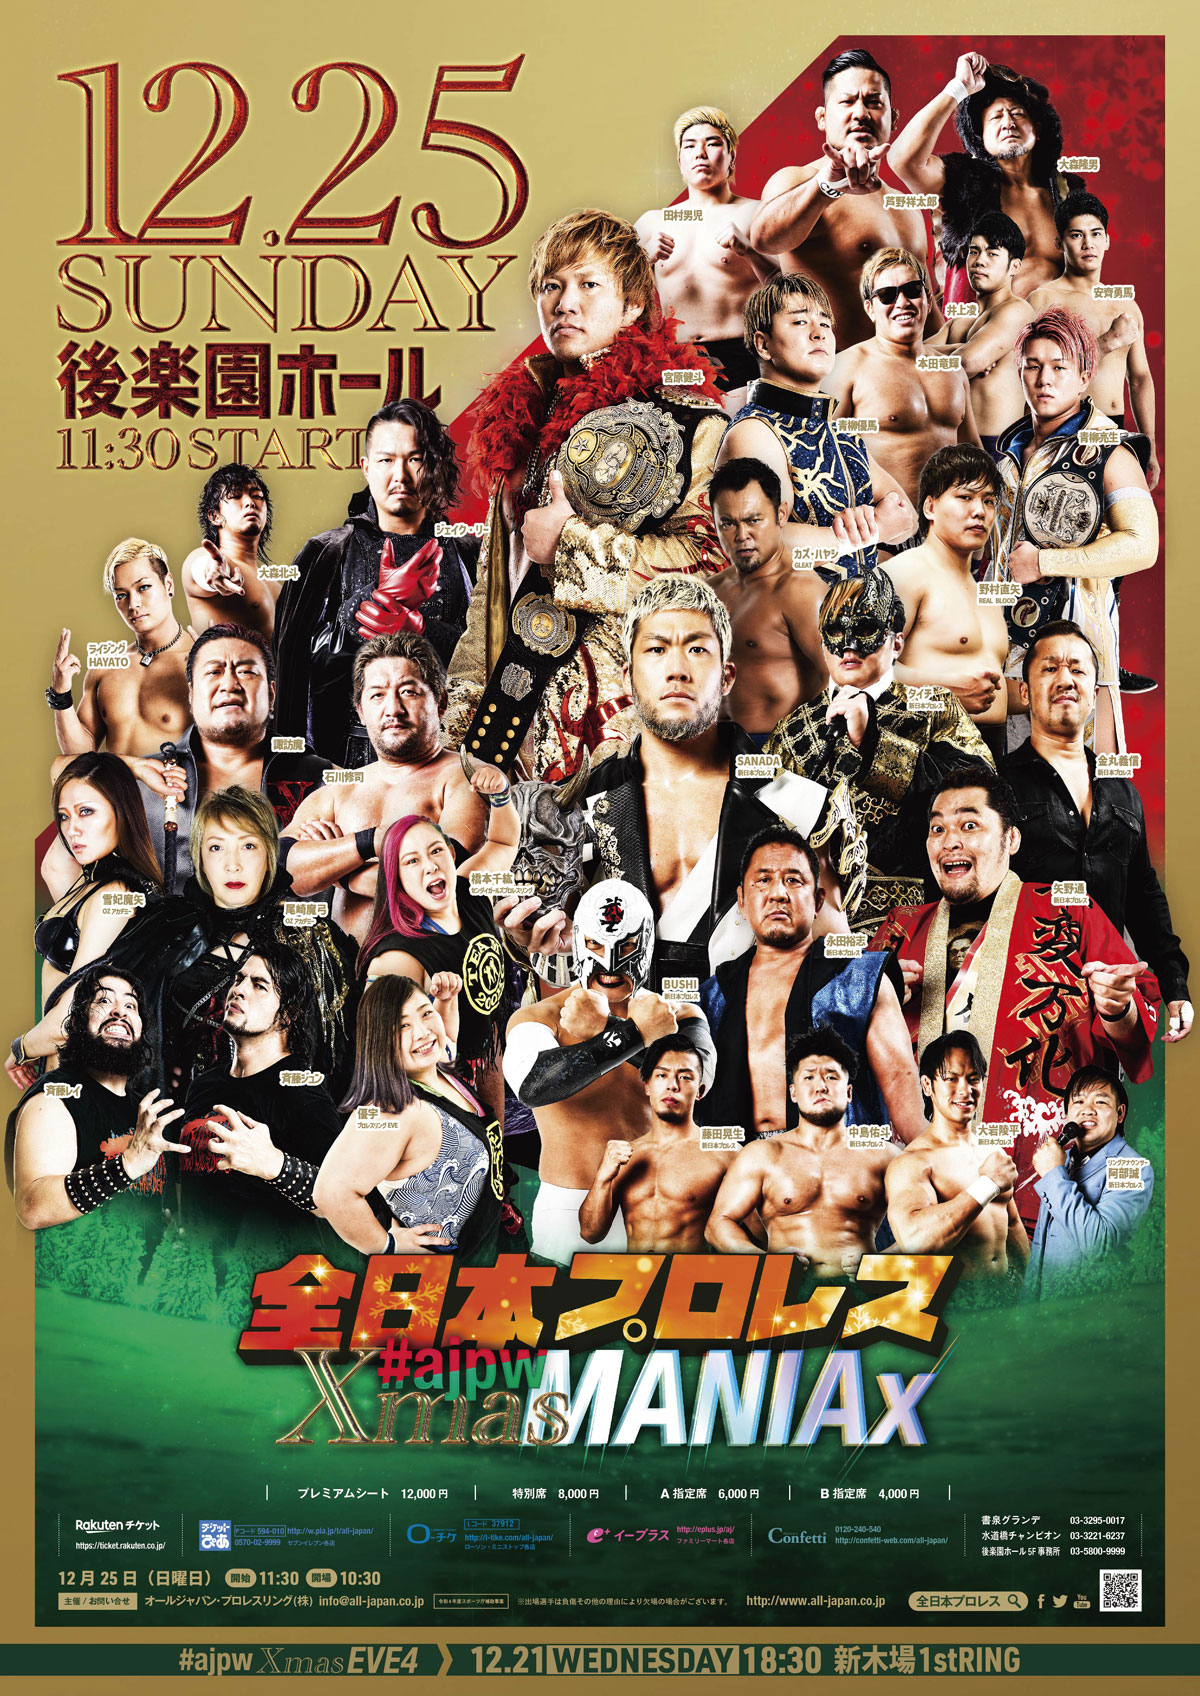 全日本プロレス12.25後楽園ホール#ajpw Xmas MANIAx」生中継。ゲスト